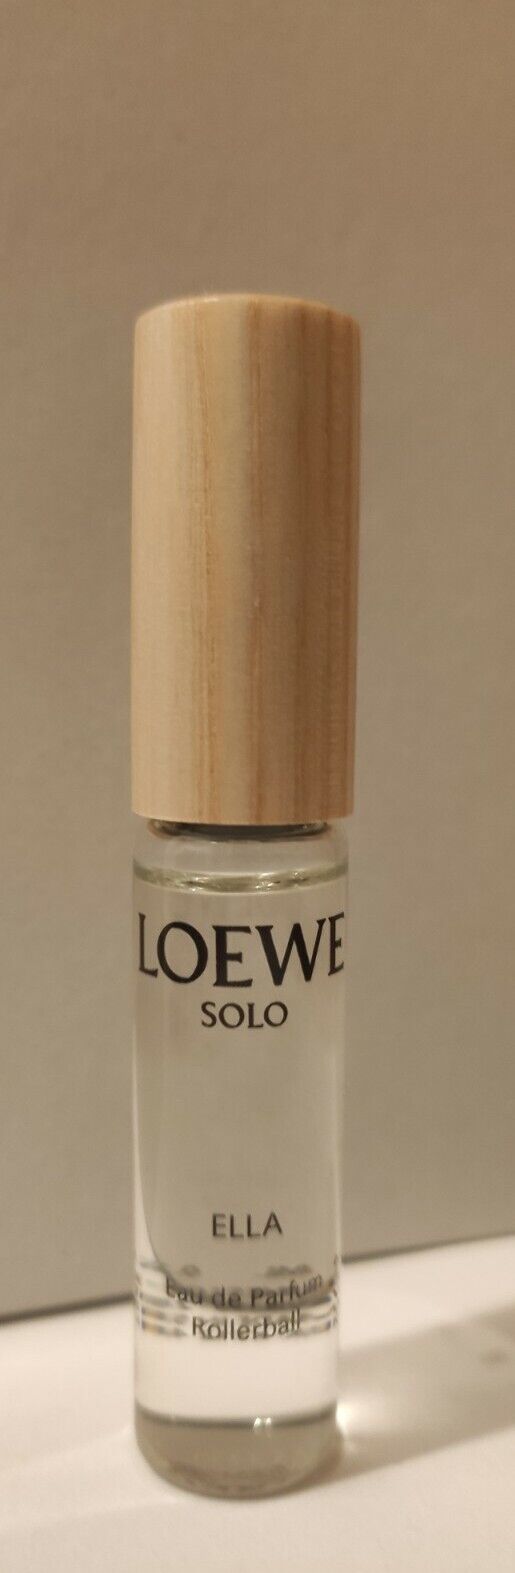 LOEWE. SOLO. ELLA EDP 7,5 ml